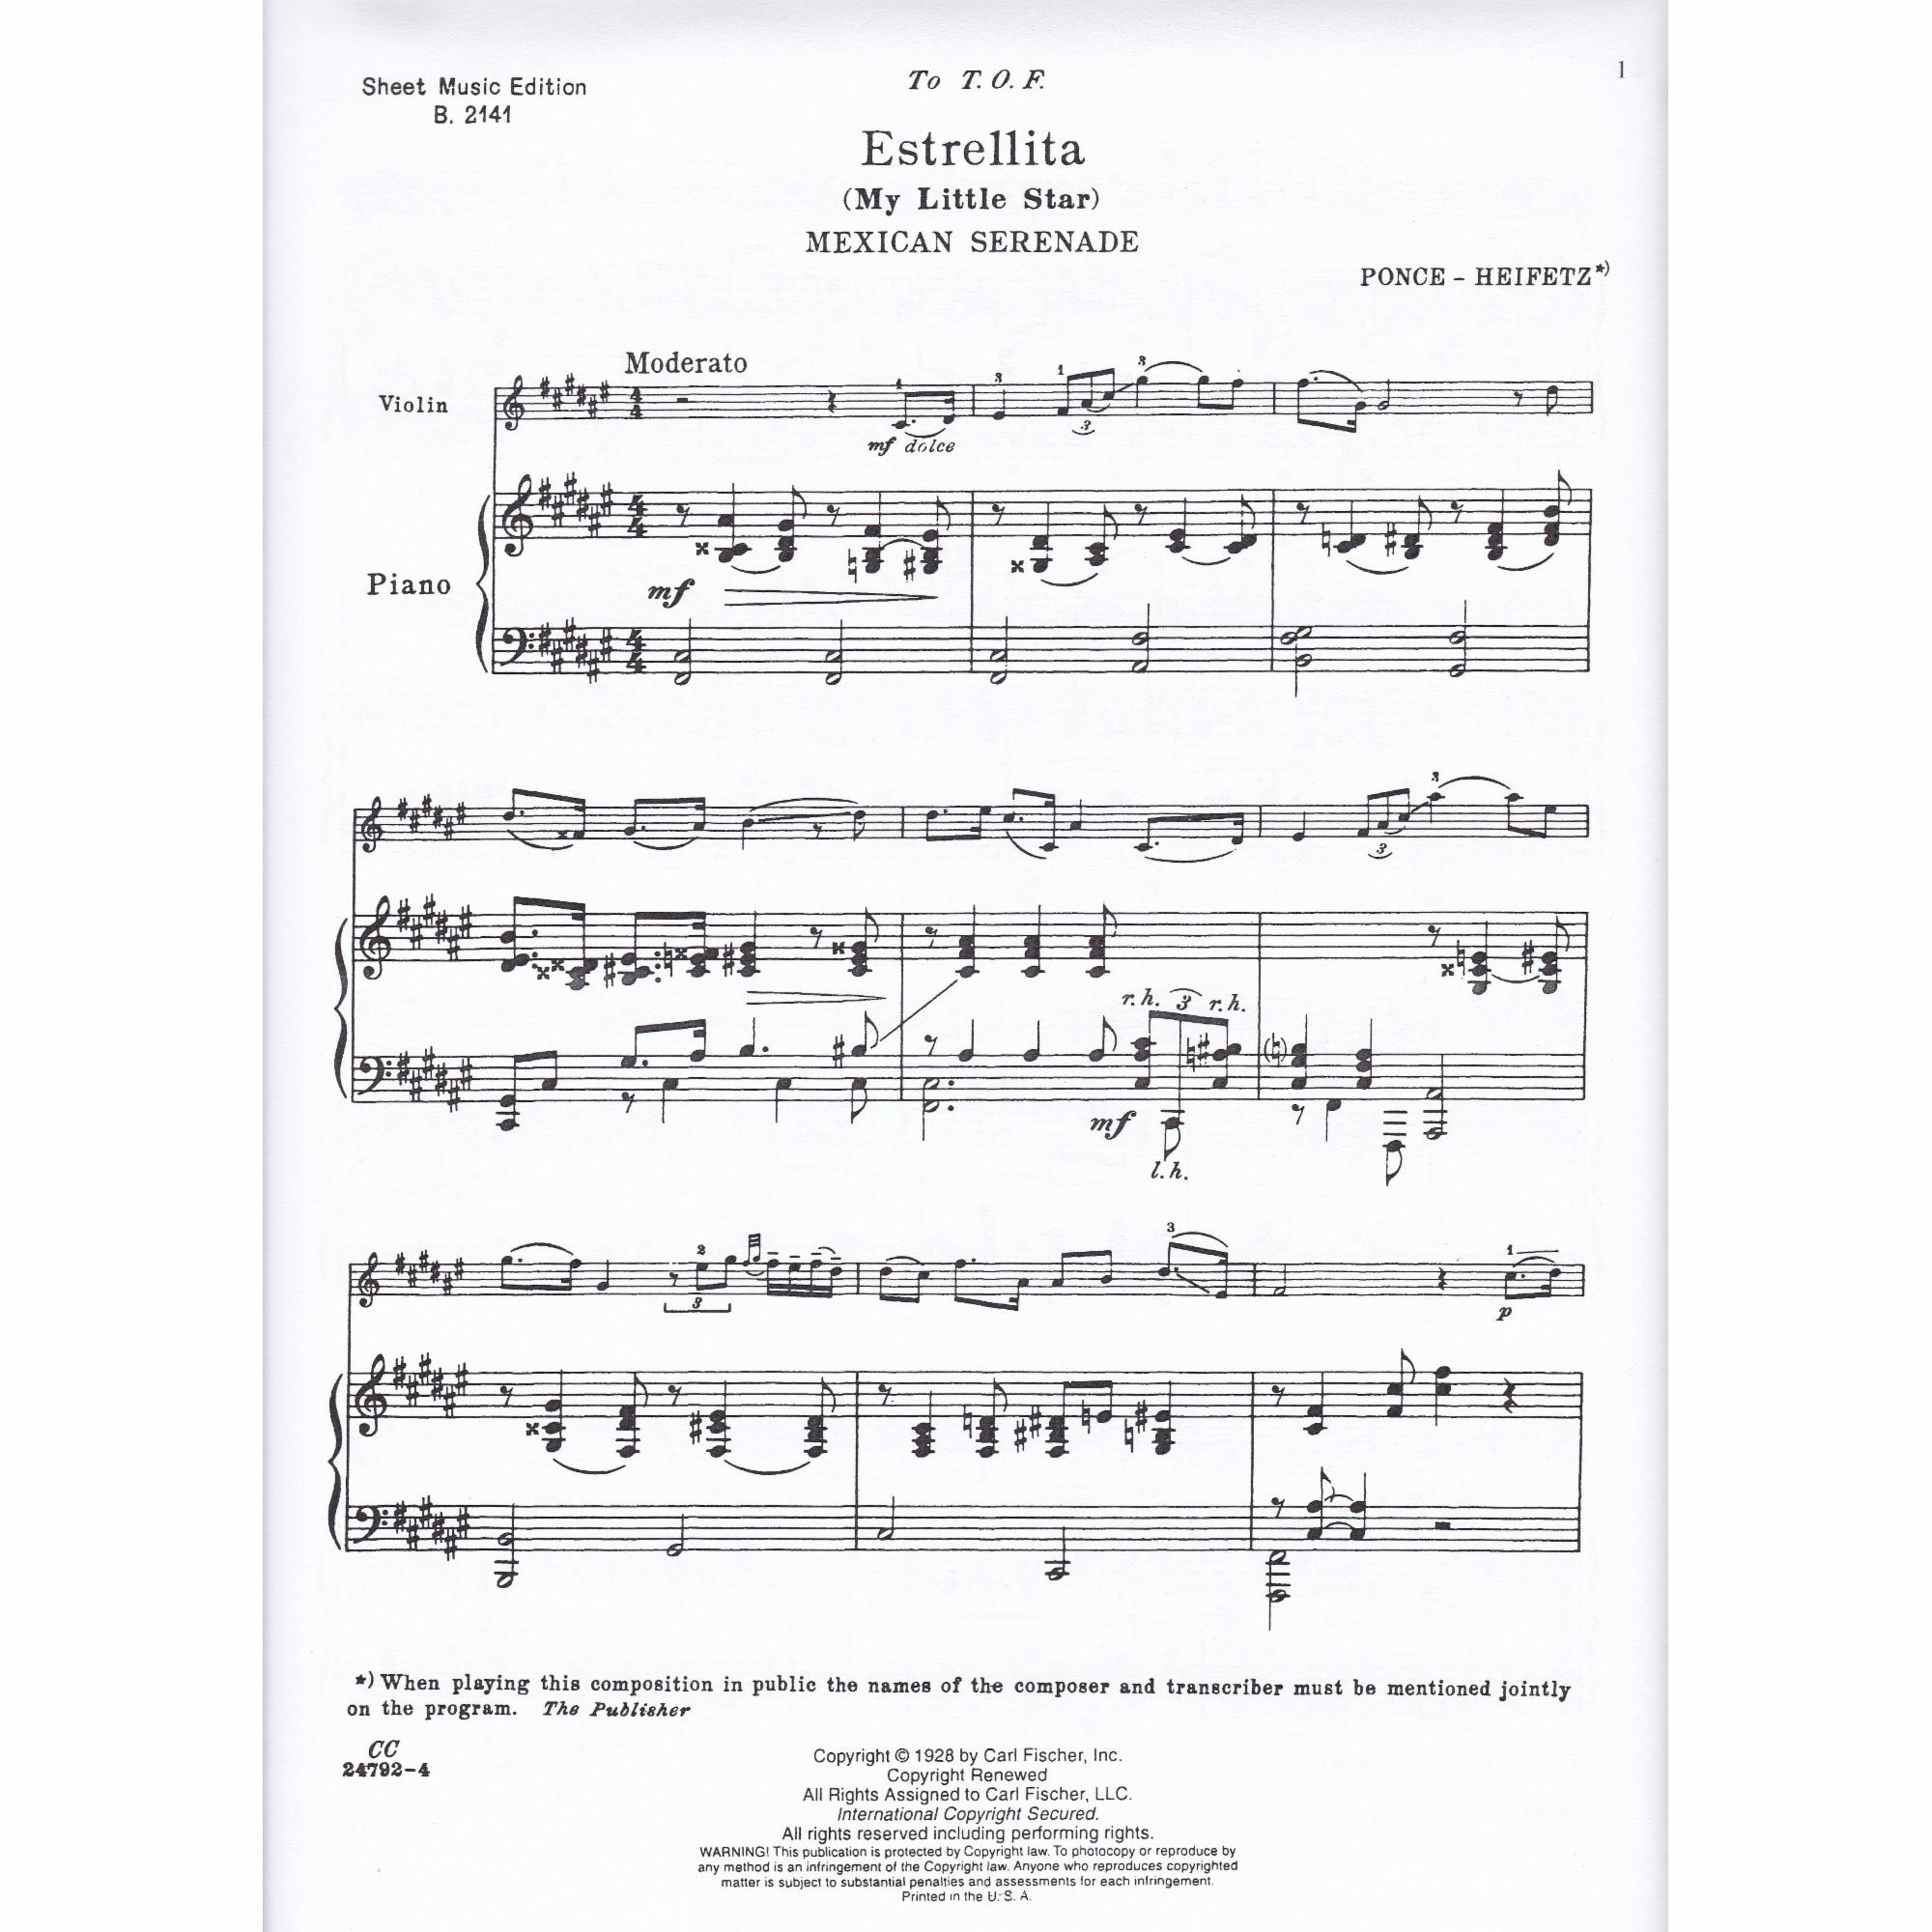 Estrellita for Violin and Piano